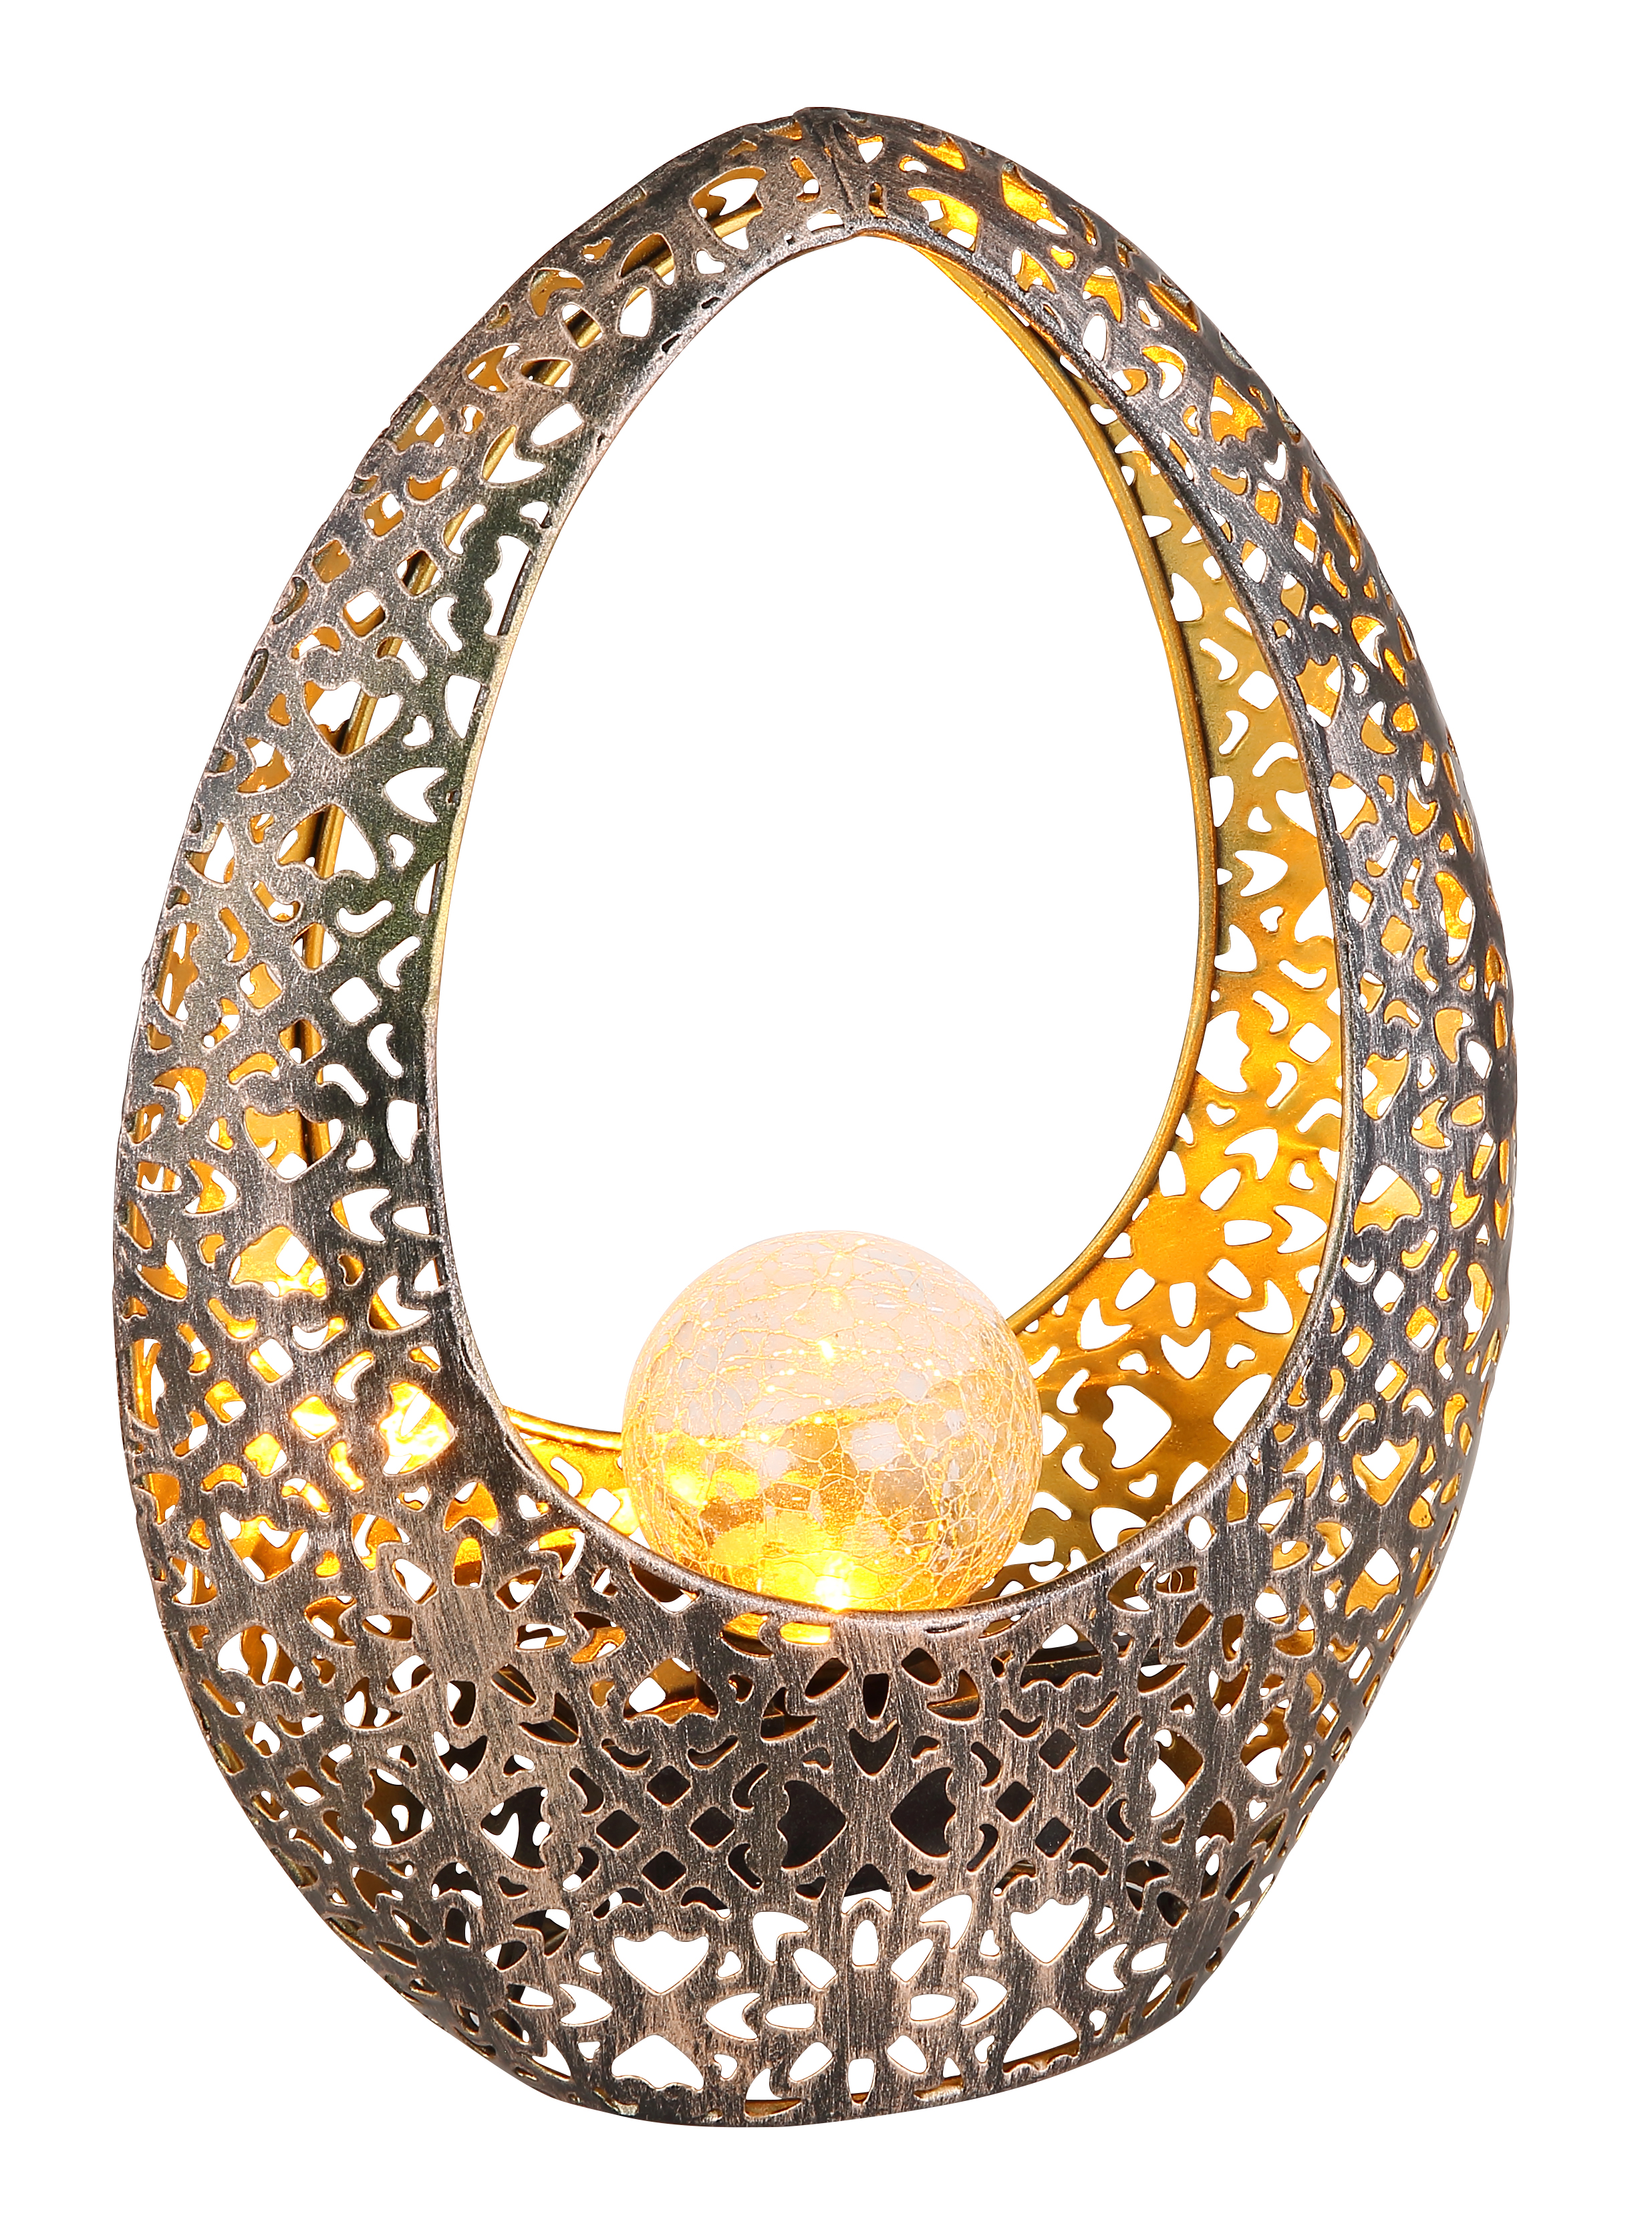 Szolár lámpa fém bronz színű lyukasztott@ dekorral/pókhálómintás üveggolyóval